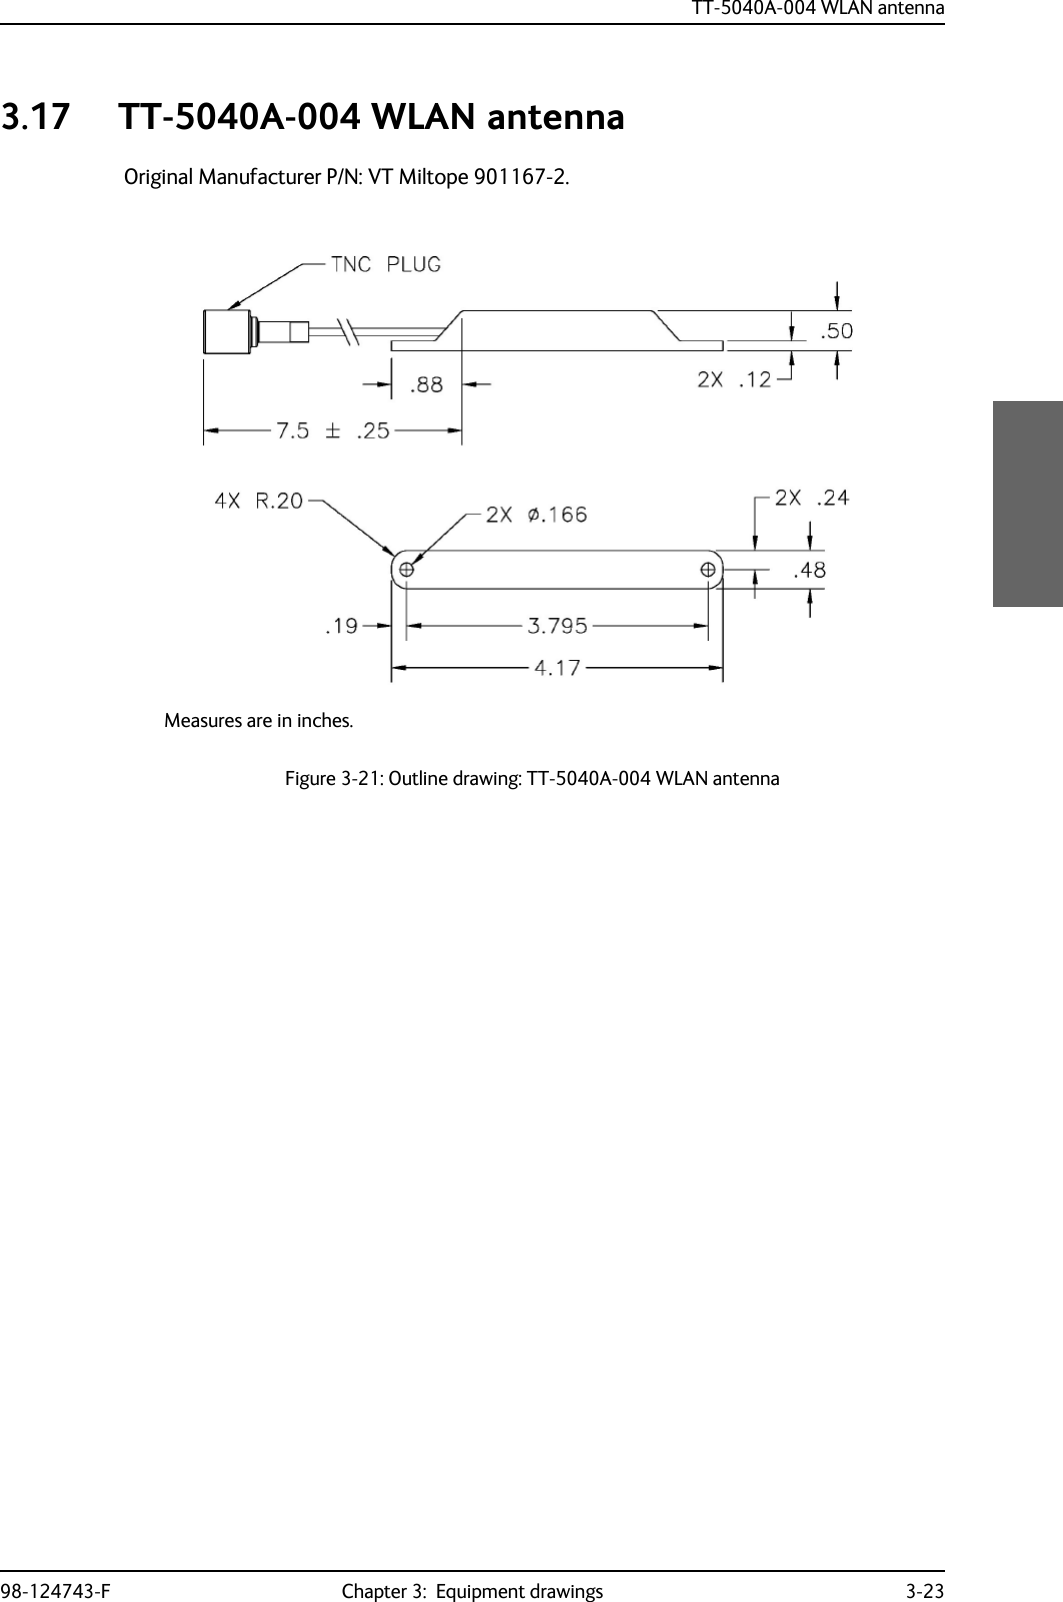 TT-5040A-004 WLAN antenna98-124743-F Chapter 3:  Equipment drawings 3-233.17 TT-5040A-004 WLAN antennaOriginal Manufacturer P/N: VT Miltope 901167-2.Figure 3-21: Outline drawing: TT-5040A-004 WLAN antennaMeasures are in inches.